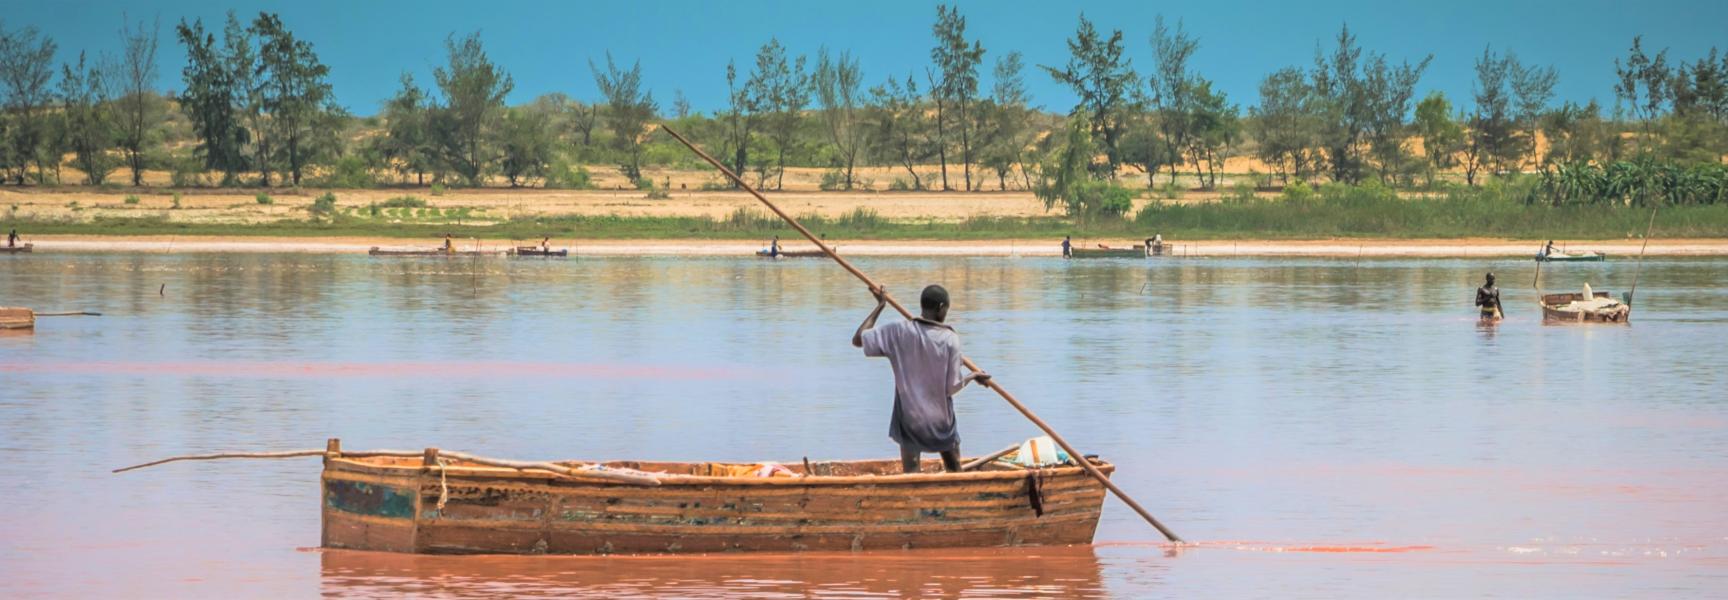 Persona en un bote recolectando sal del Lago Rosa en Senegal